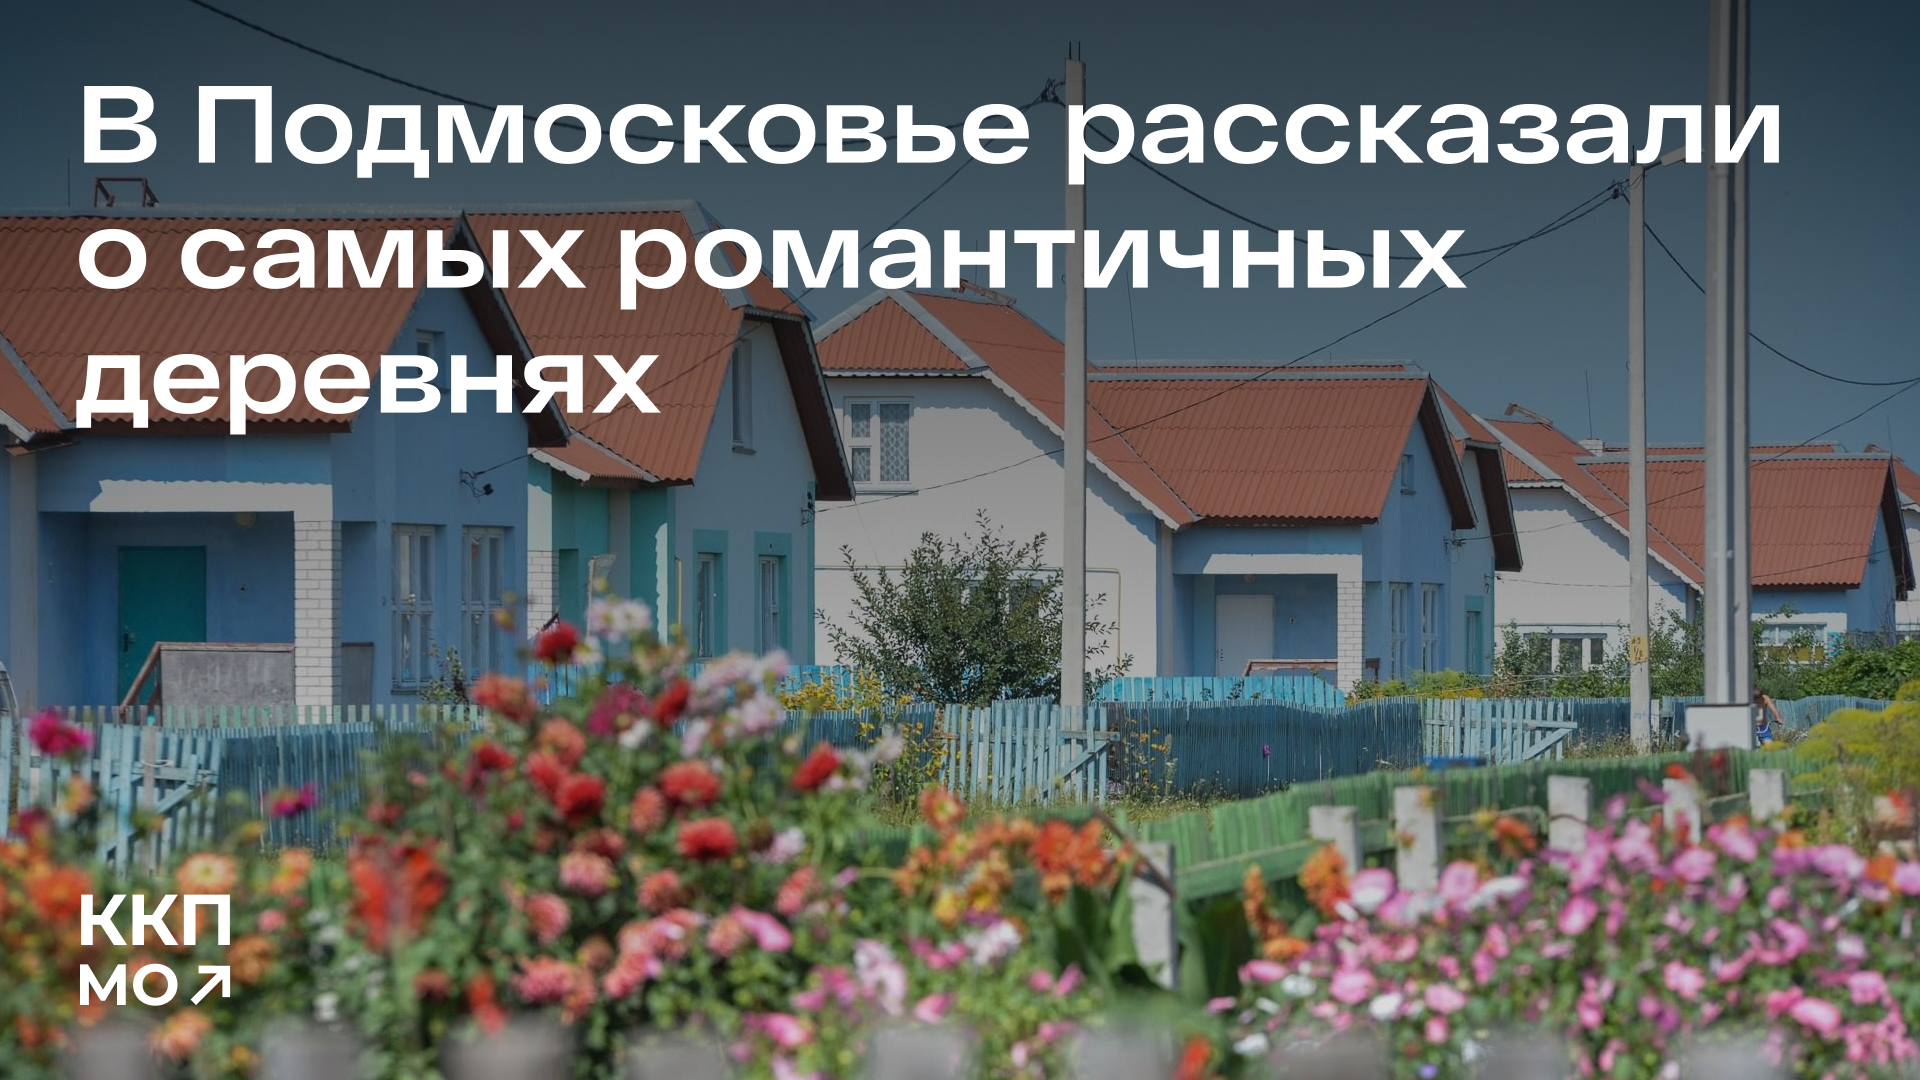 Волоколамское Милованье вошло в список самых романтичных деревень Подмосковья